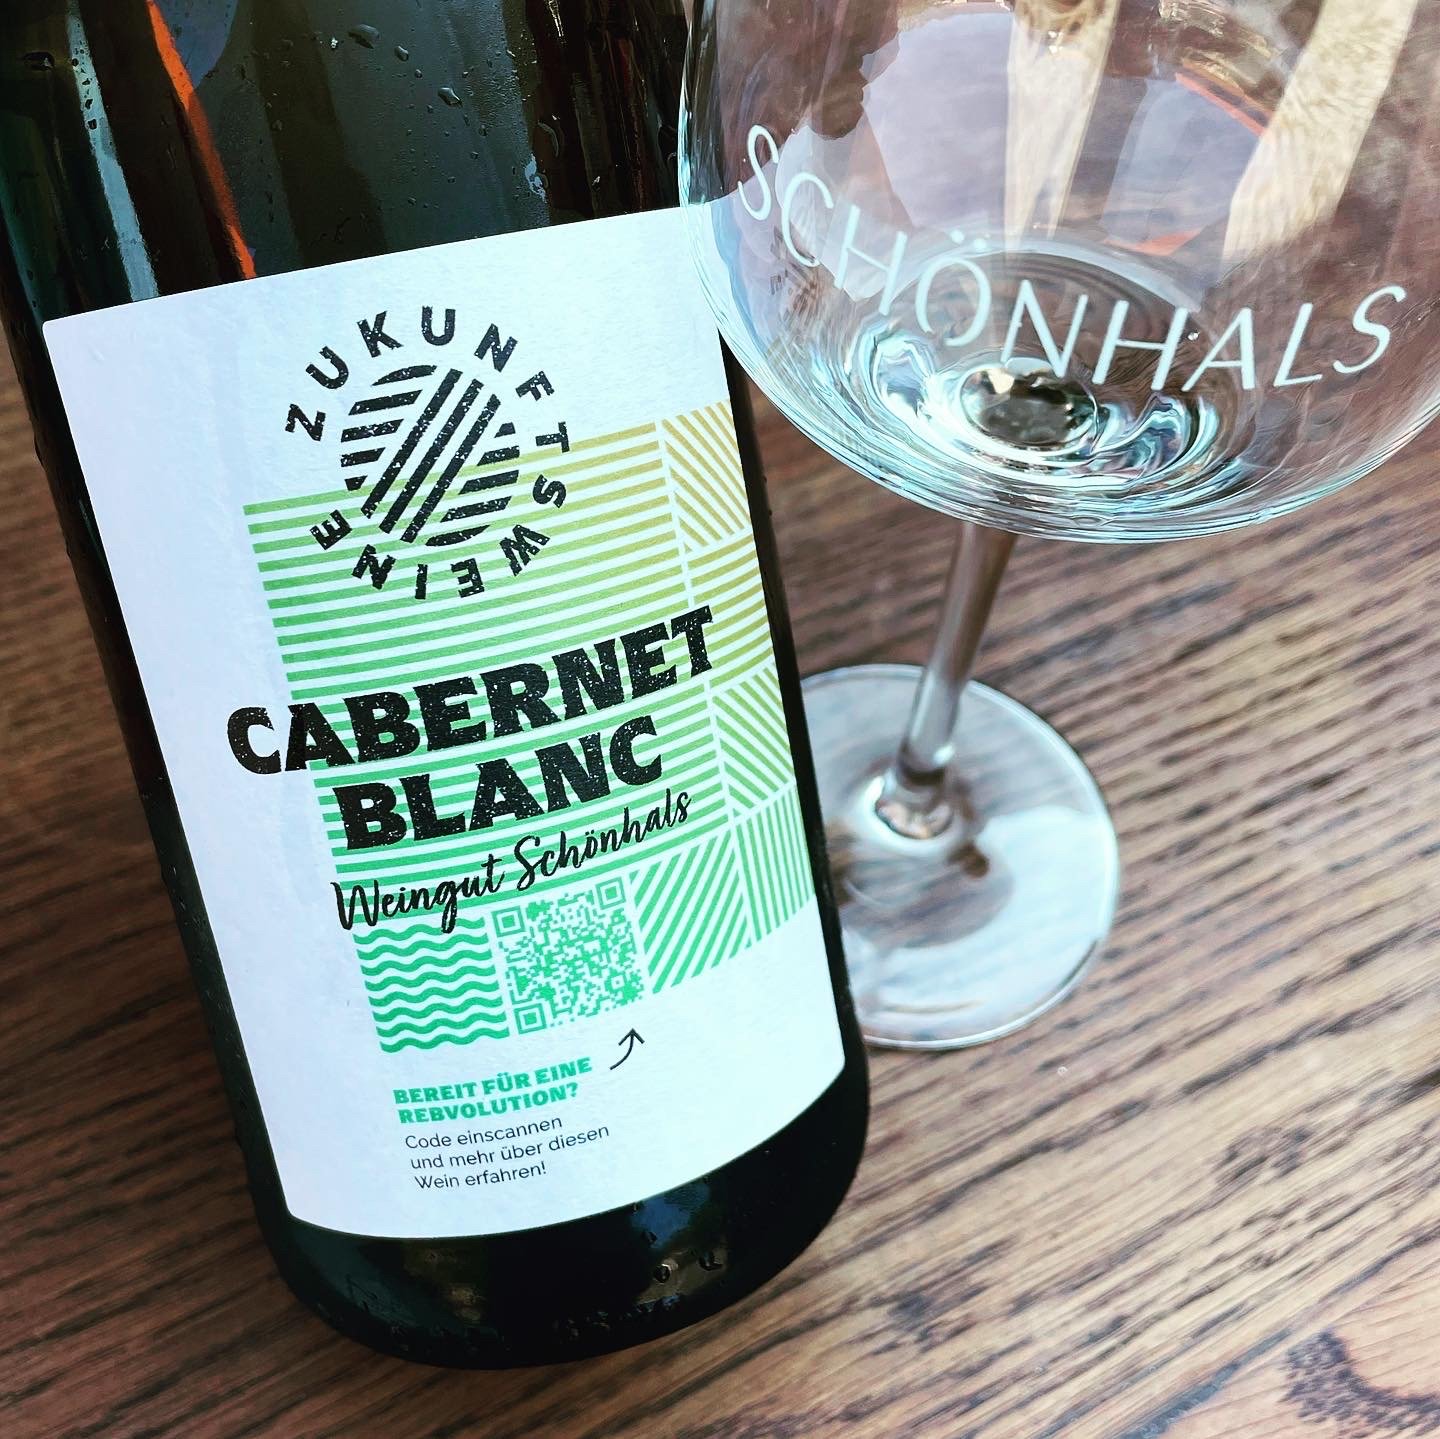 Weingut Schönhals Cabernet Blanc 2020 Zukunftsweine Flaskevis (C) Thomas Bohl.jpg